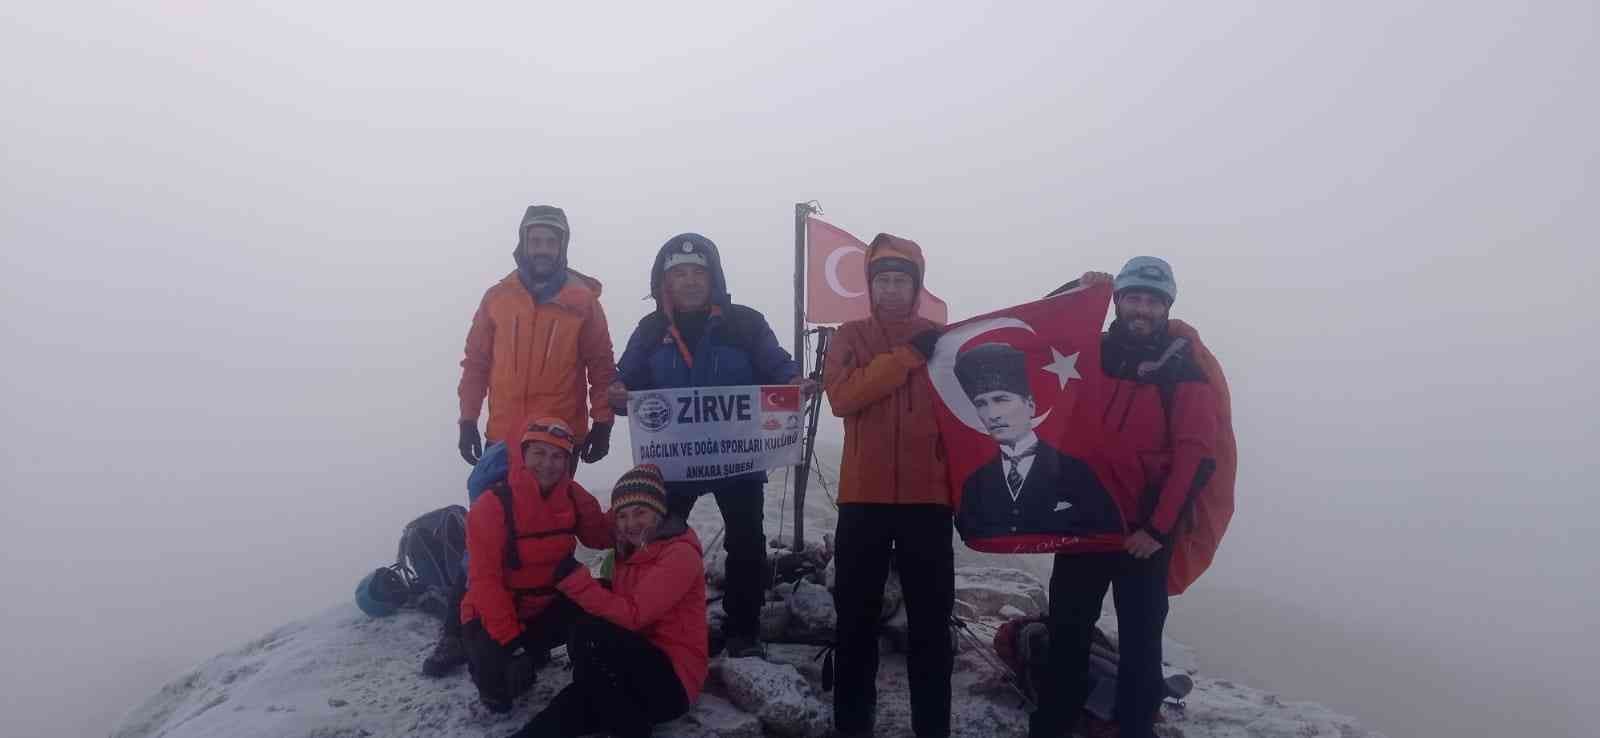 Cumhuriyet Bayramı’nda Berit Dağı’na zirve tırmanışı gerçekleştirdiler #kahramanmaras